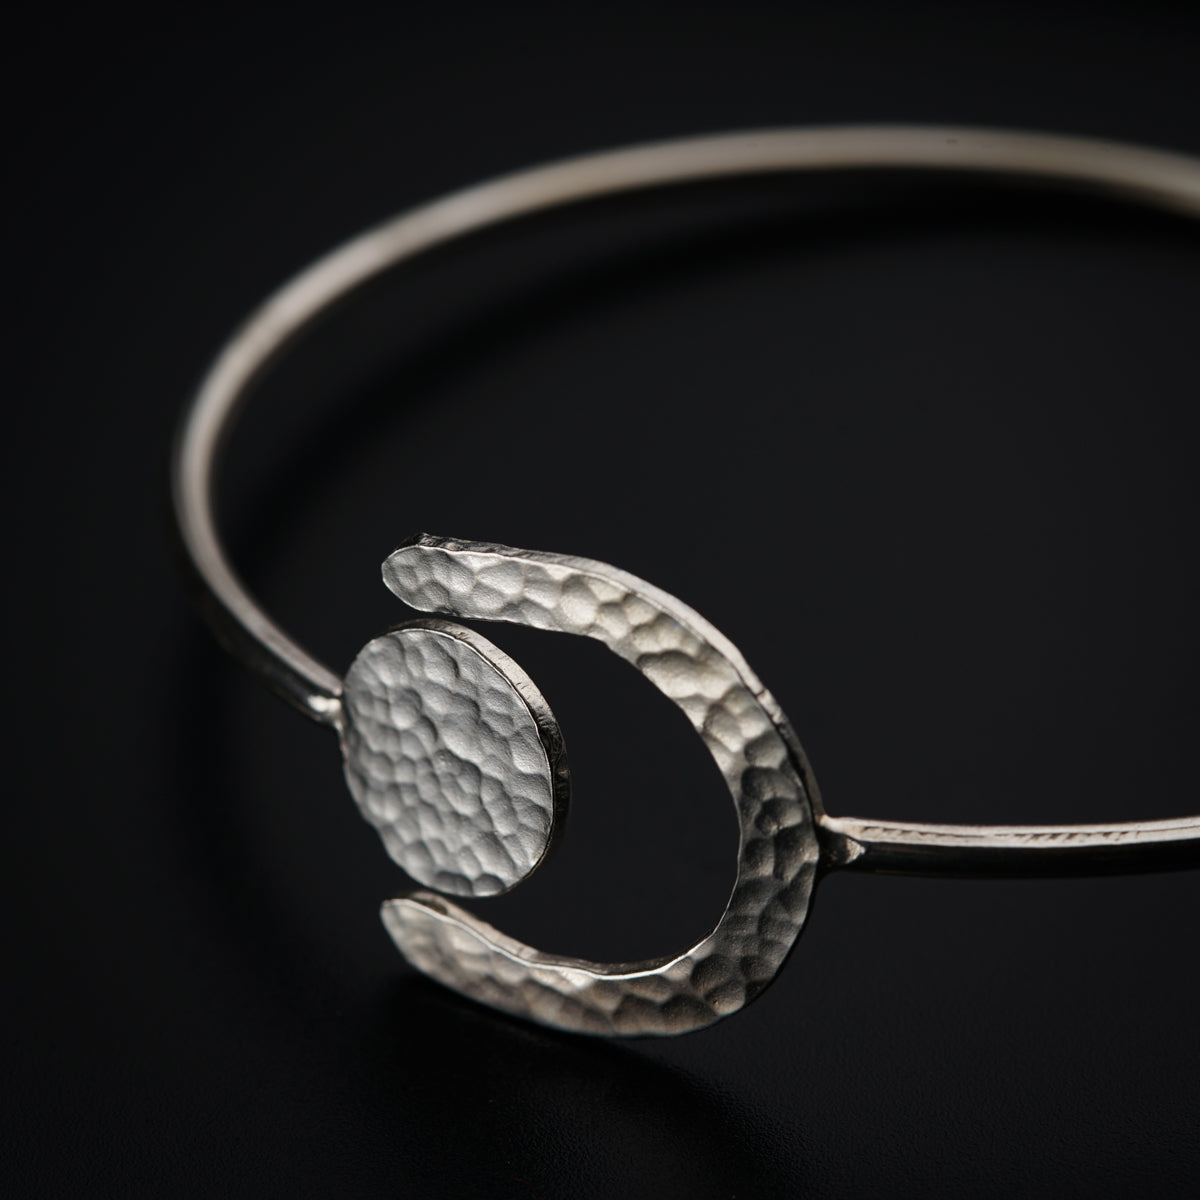 a close up of a silver bracelet on a black background